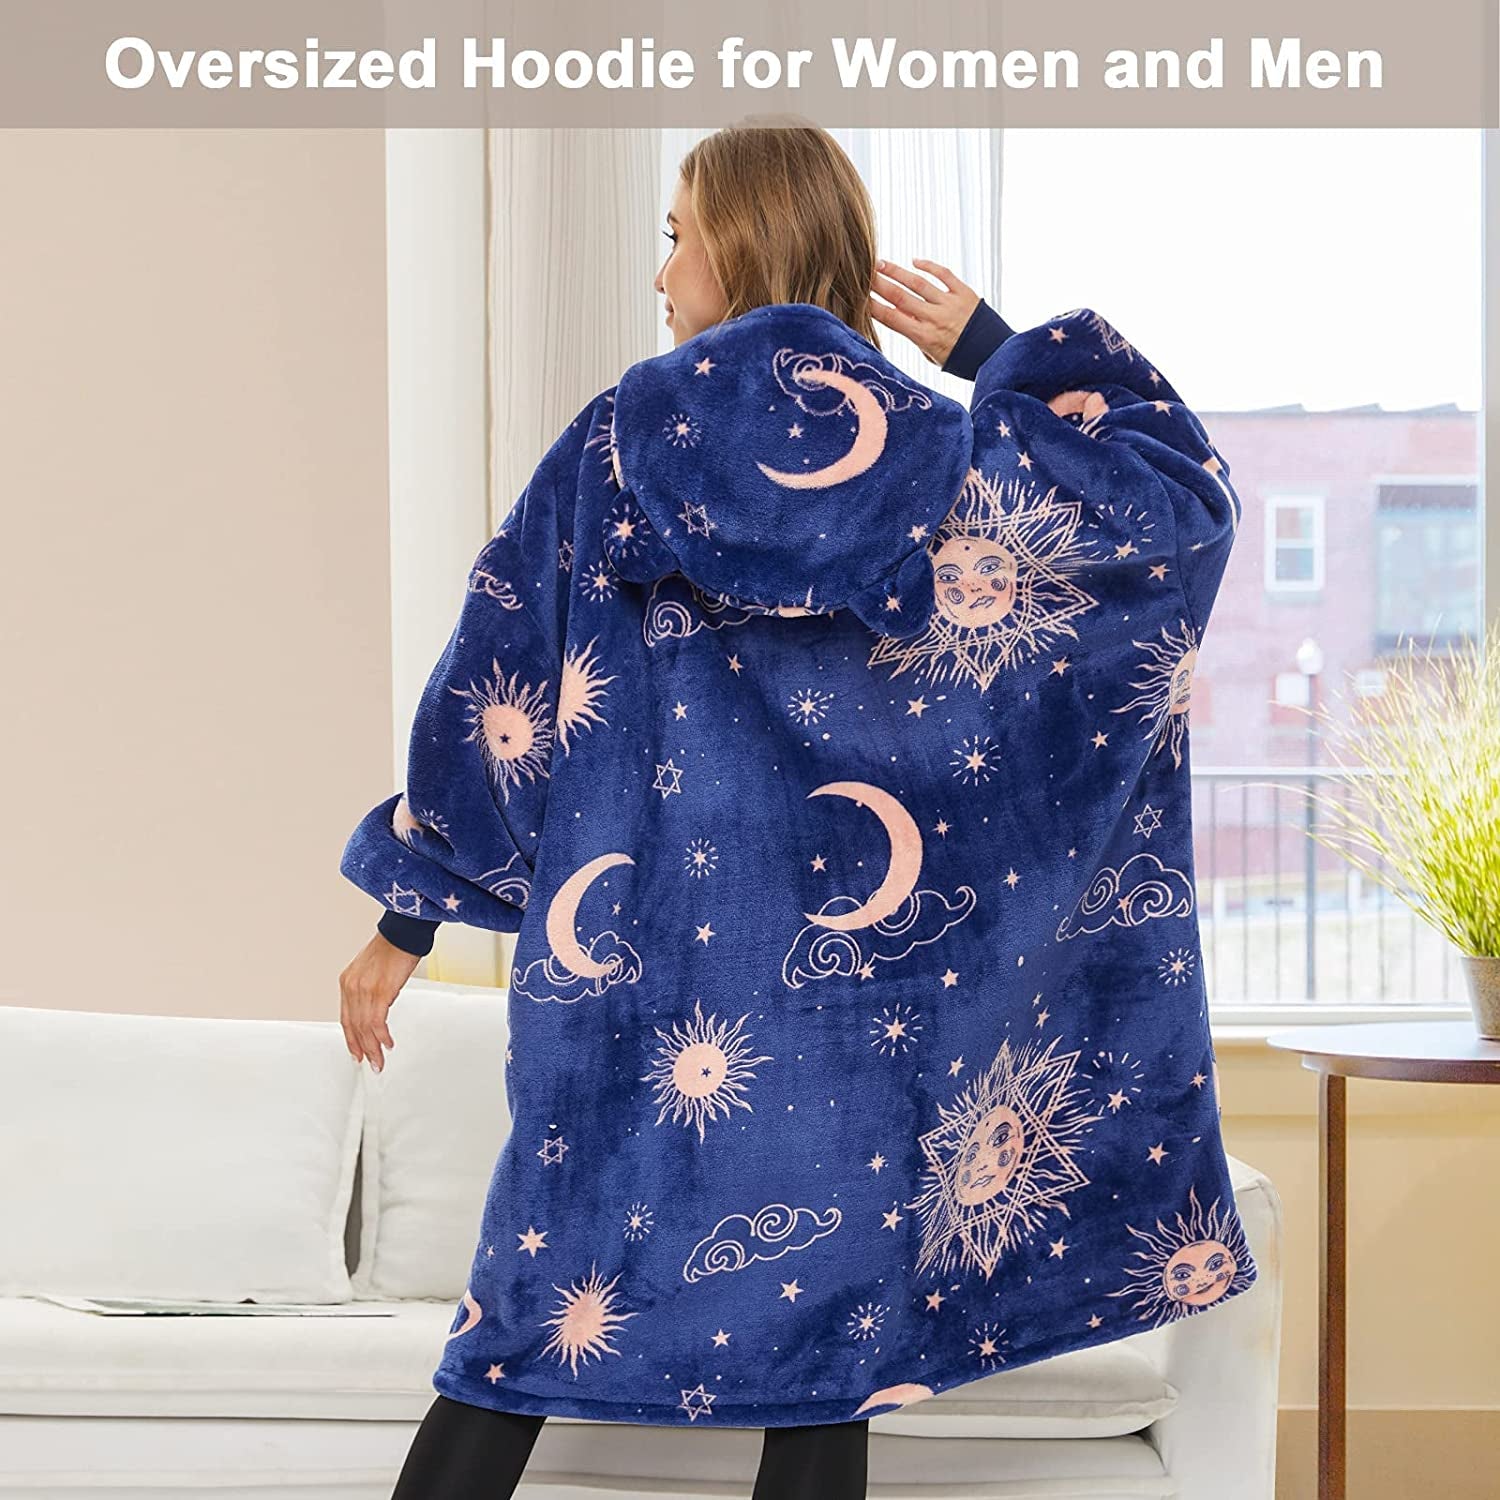 Wearable Blanket Hoodie, Oversized Sherpa Blanket Sweatshirt for Adults Women Men Kids, Cozy, Warm and Fuzzy Hooded Blanket, One Size Fits All